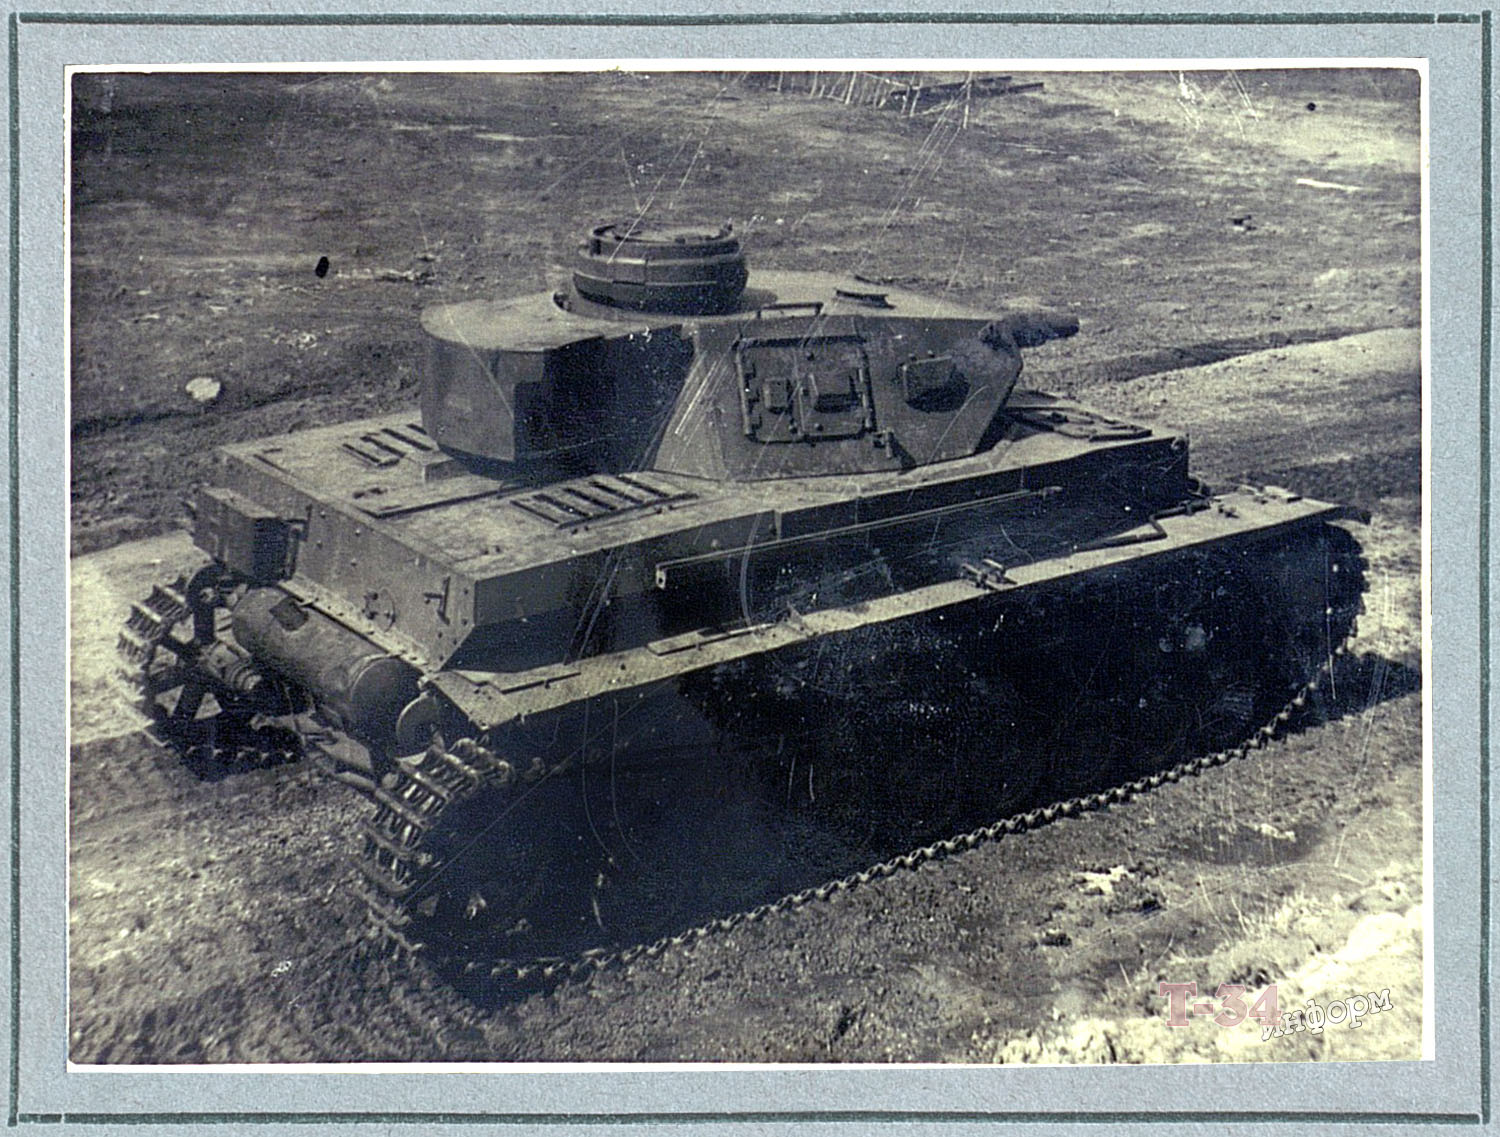 Первая а четвертая т. 4,75 Т. P 40 танк историческое фото. Зик тайп т 4.